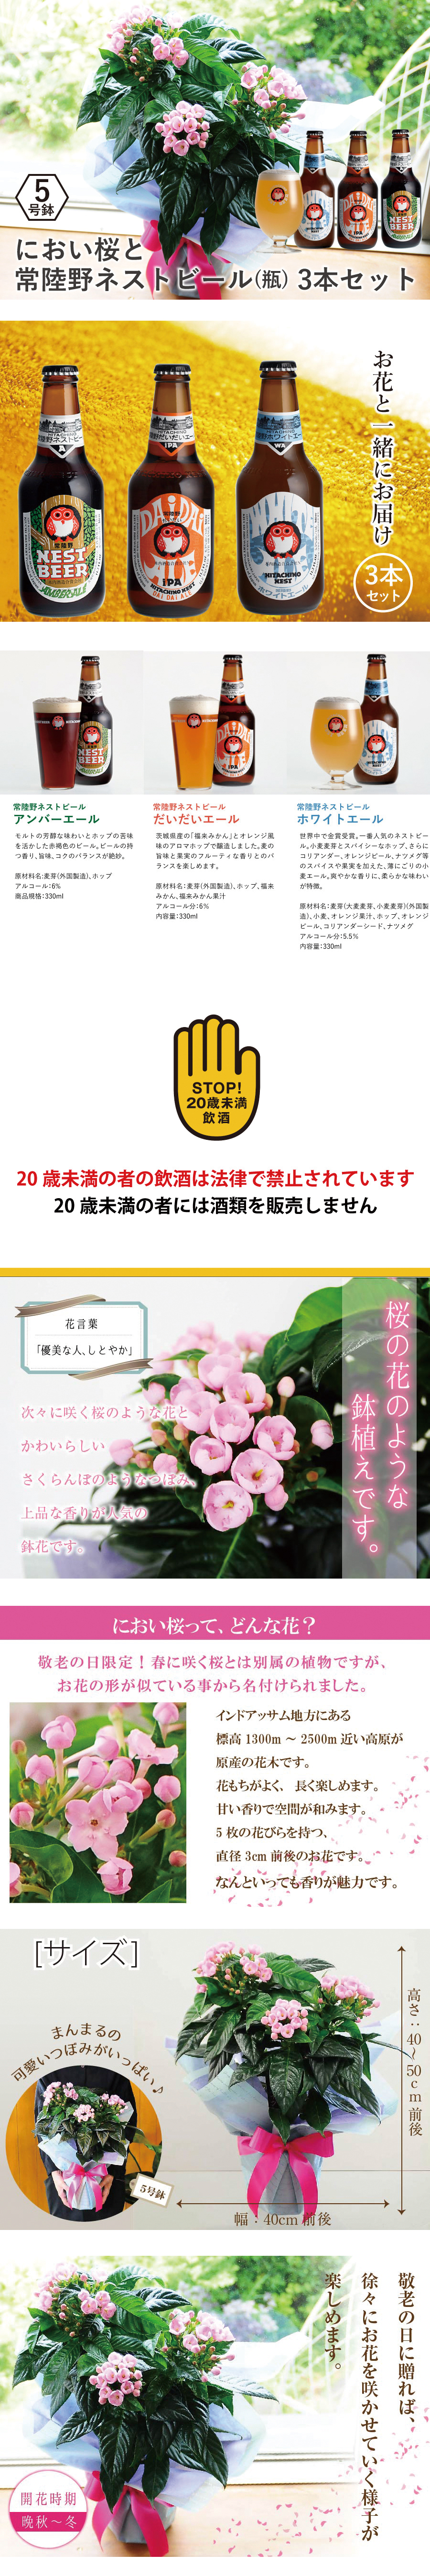 におい桜の鉢植え 5号鉢と常陸野ネストビール(瓶) 3本セット